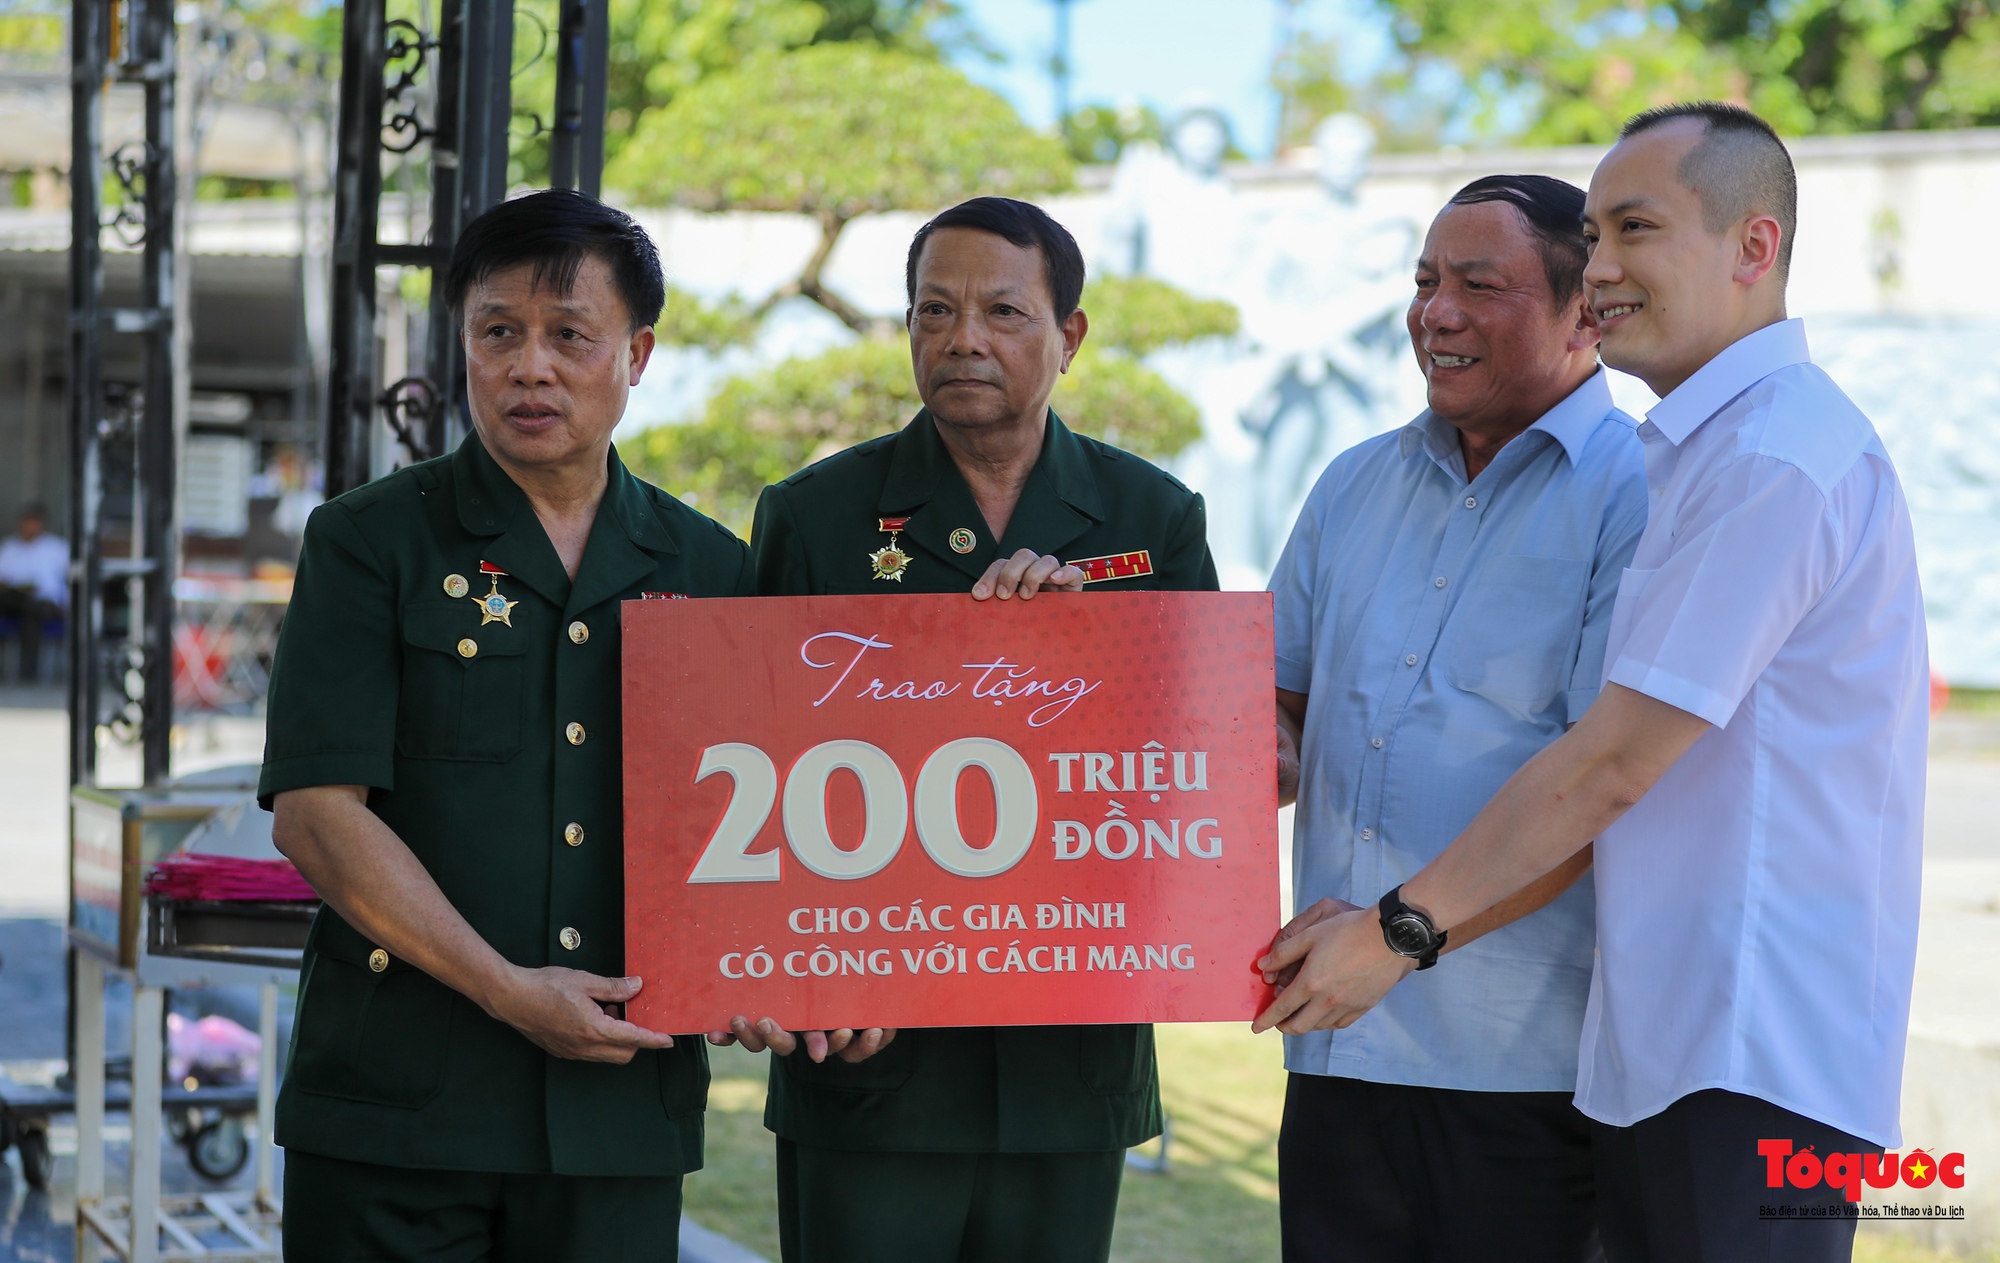 Cũng trong khuôn khổ chương trình công tác, Bộ trưởng Bộ VHTTDL Nguyễn Văn Hùng đã trao 200 triệu đồng cho các gia đình có công với cách mạng trên địa bàn Quảng Trị.